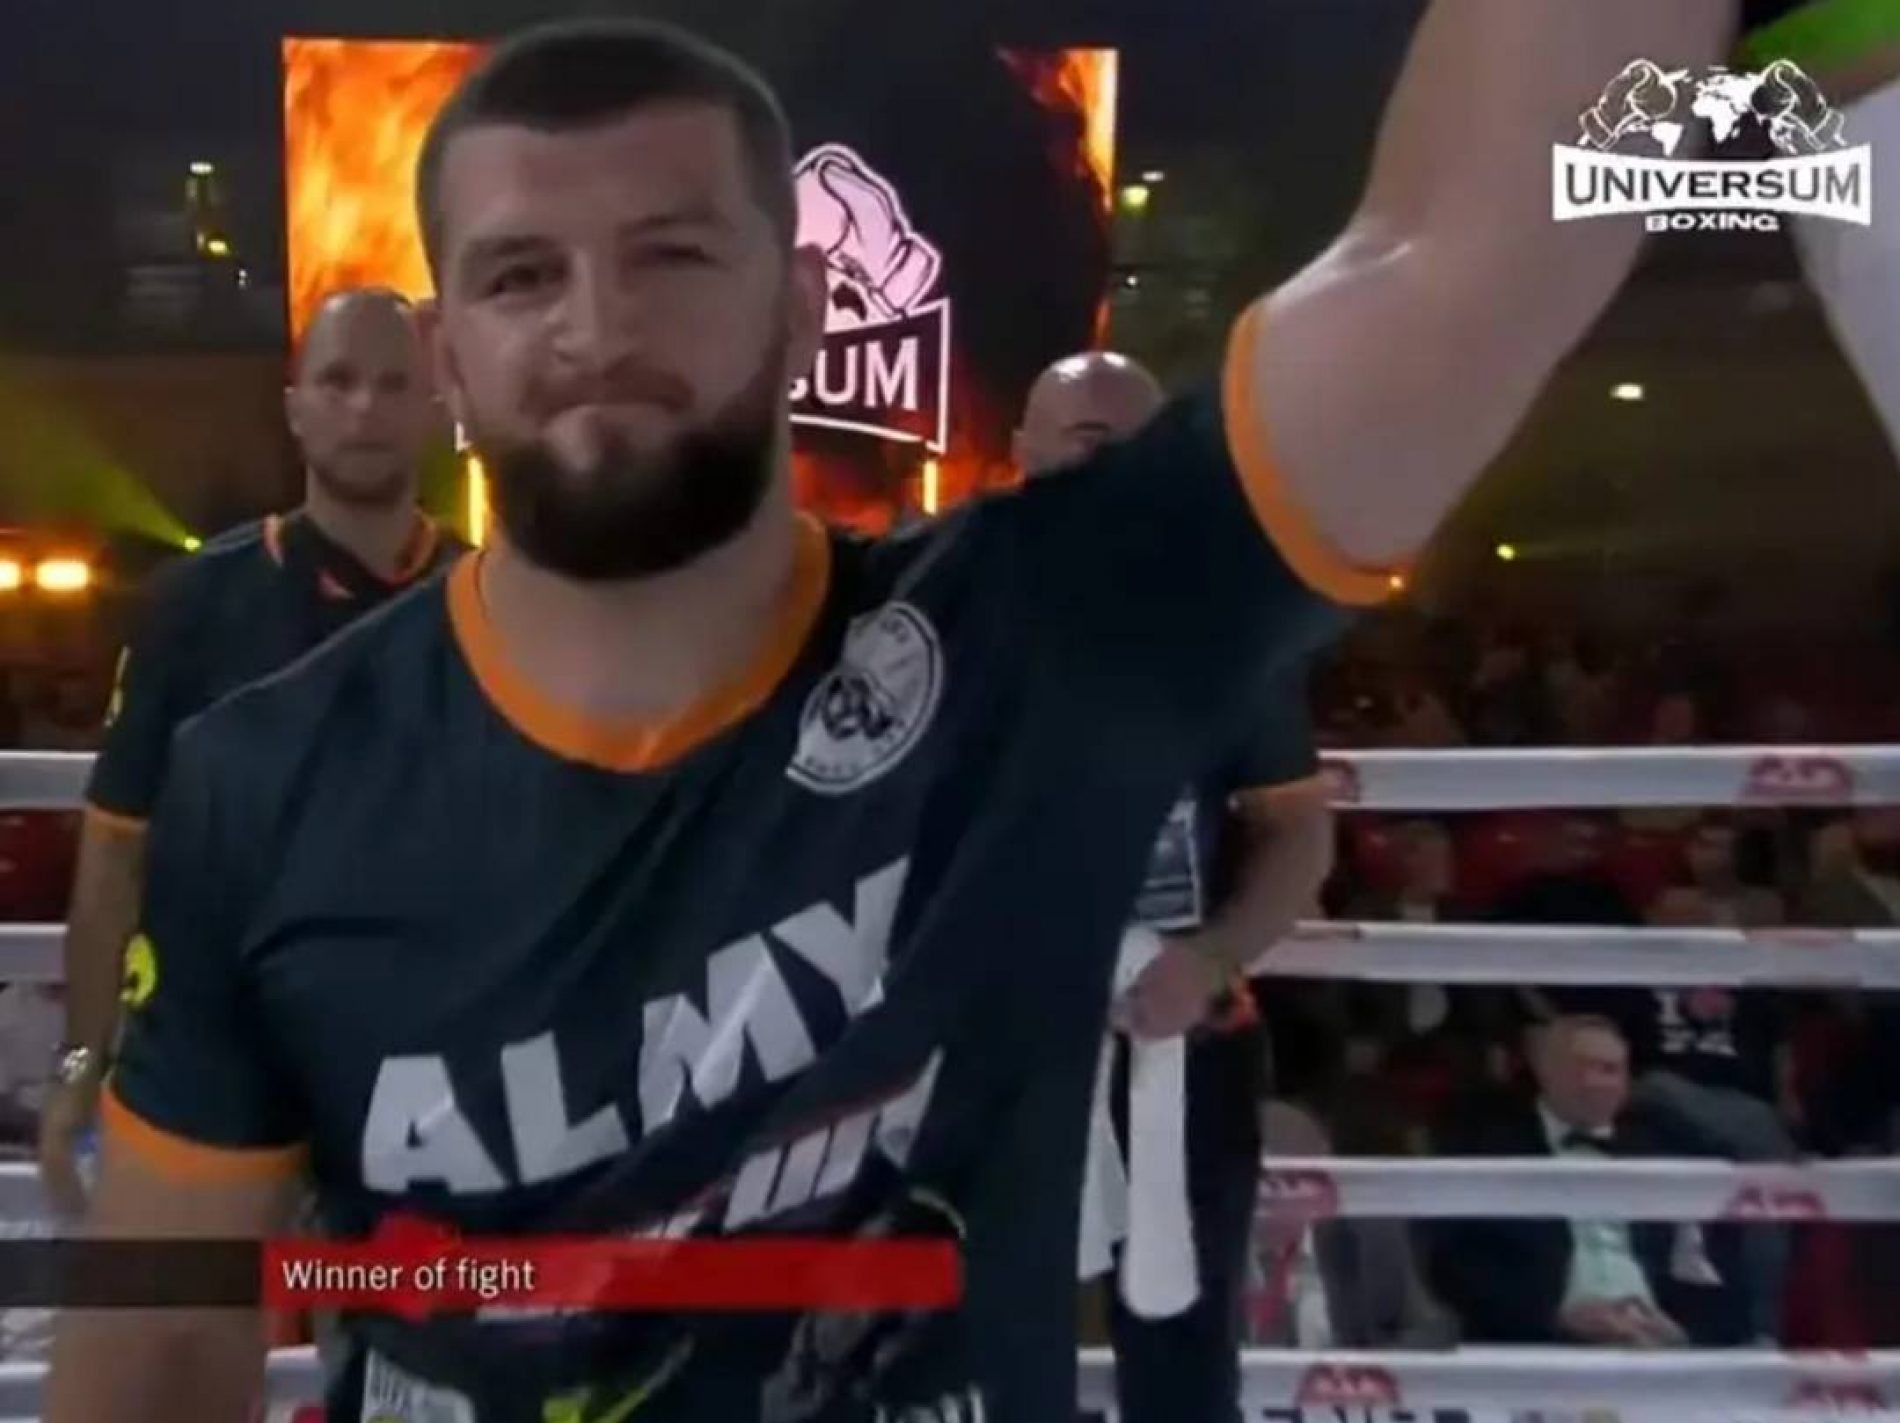 Ahmed Krnjić odradio svoj drugi meč u profesionalnom boksu: Nokautirao protivnika već u prvoj rundi